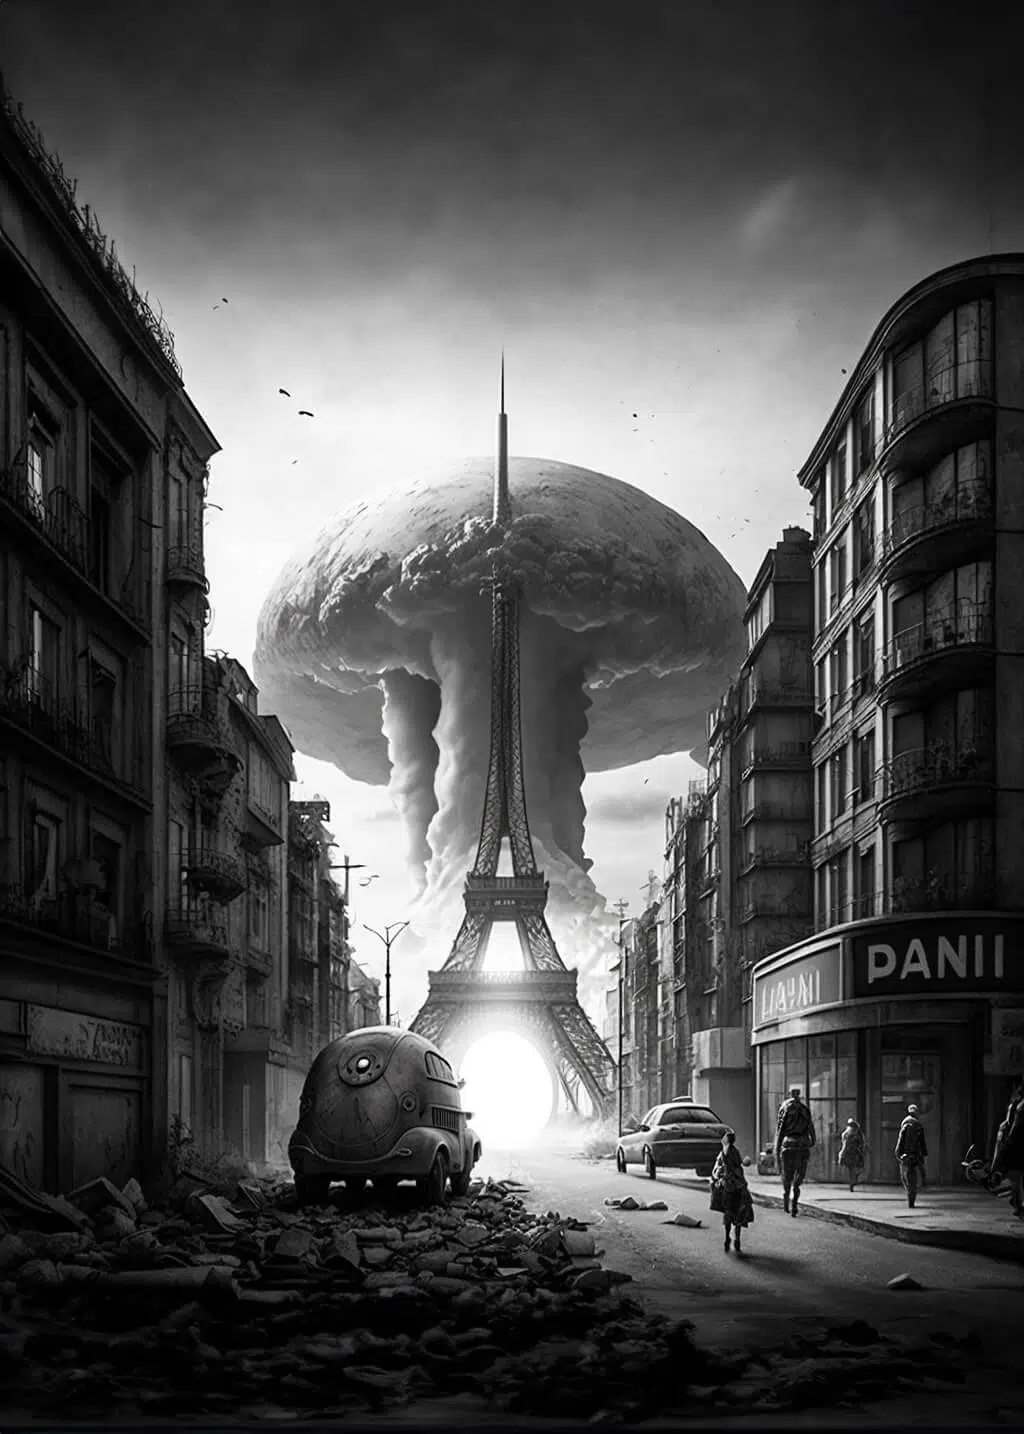 The end of Paris